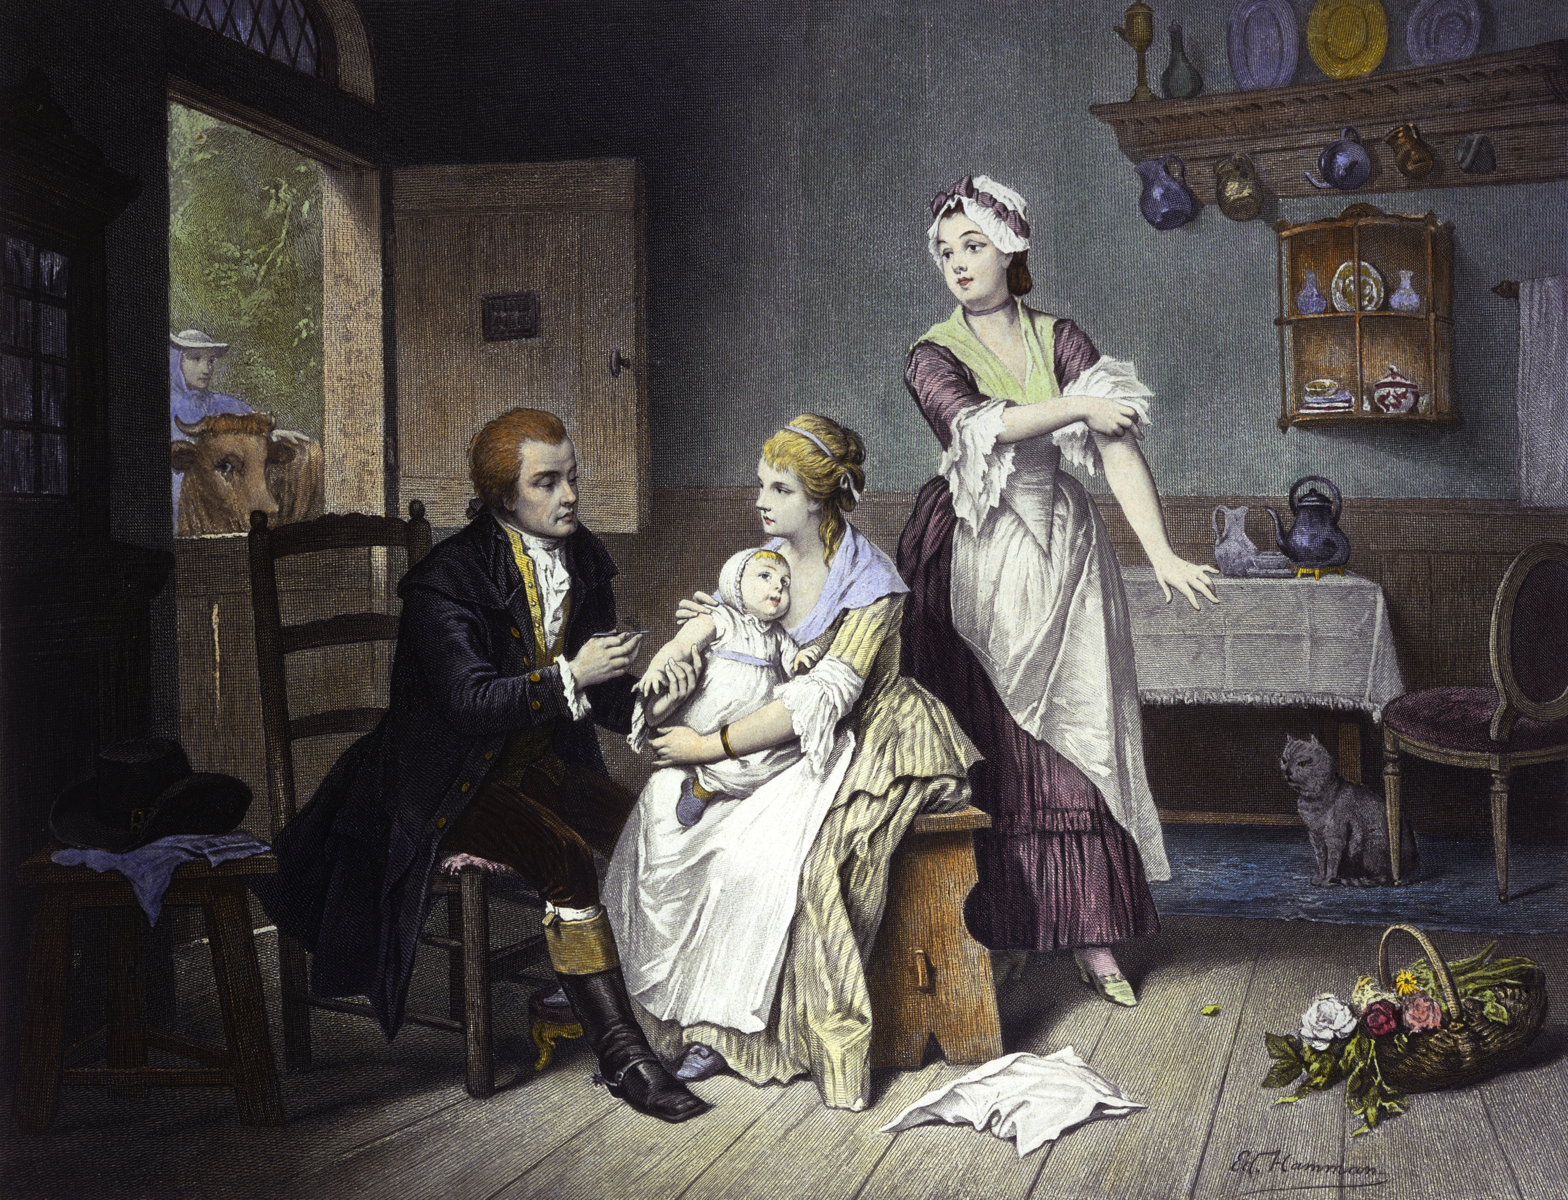 Edward Jenner vaccinant son jeune enfant, tenu par son épouse